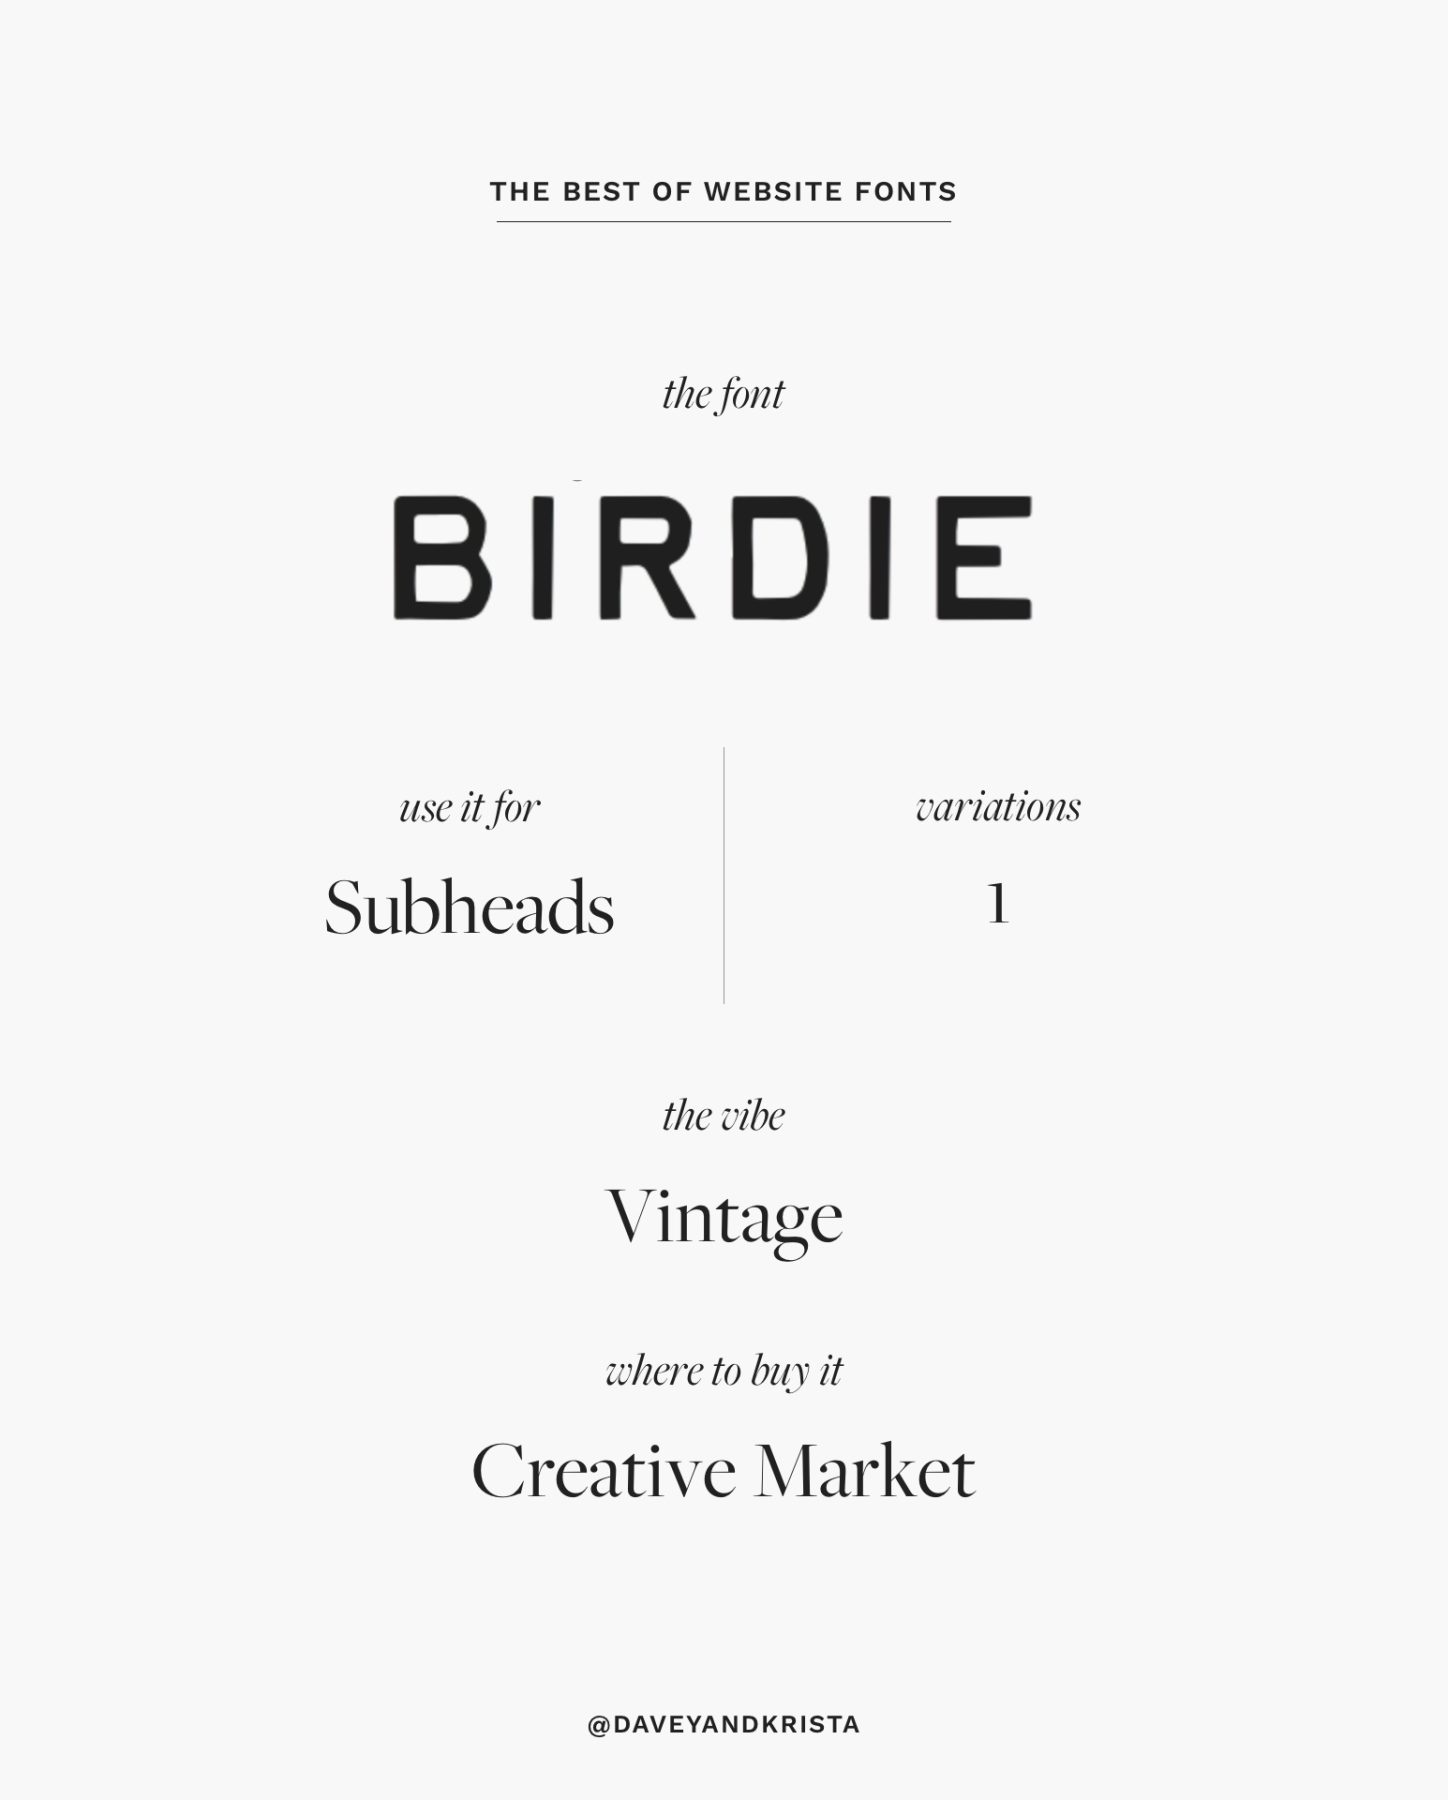 Retro-inspired sans serif font for websites - Birdie | The Best Fonts for Websites